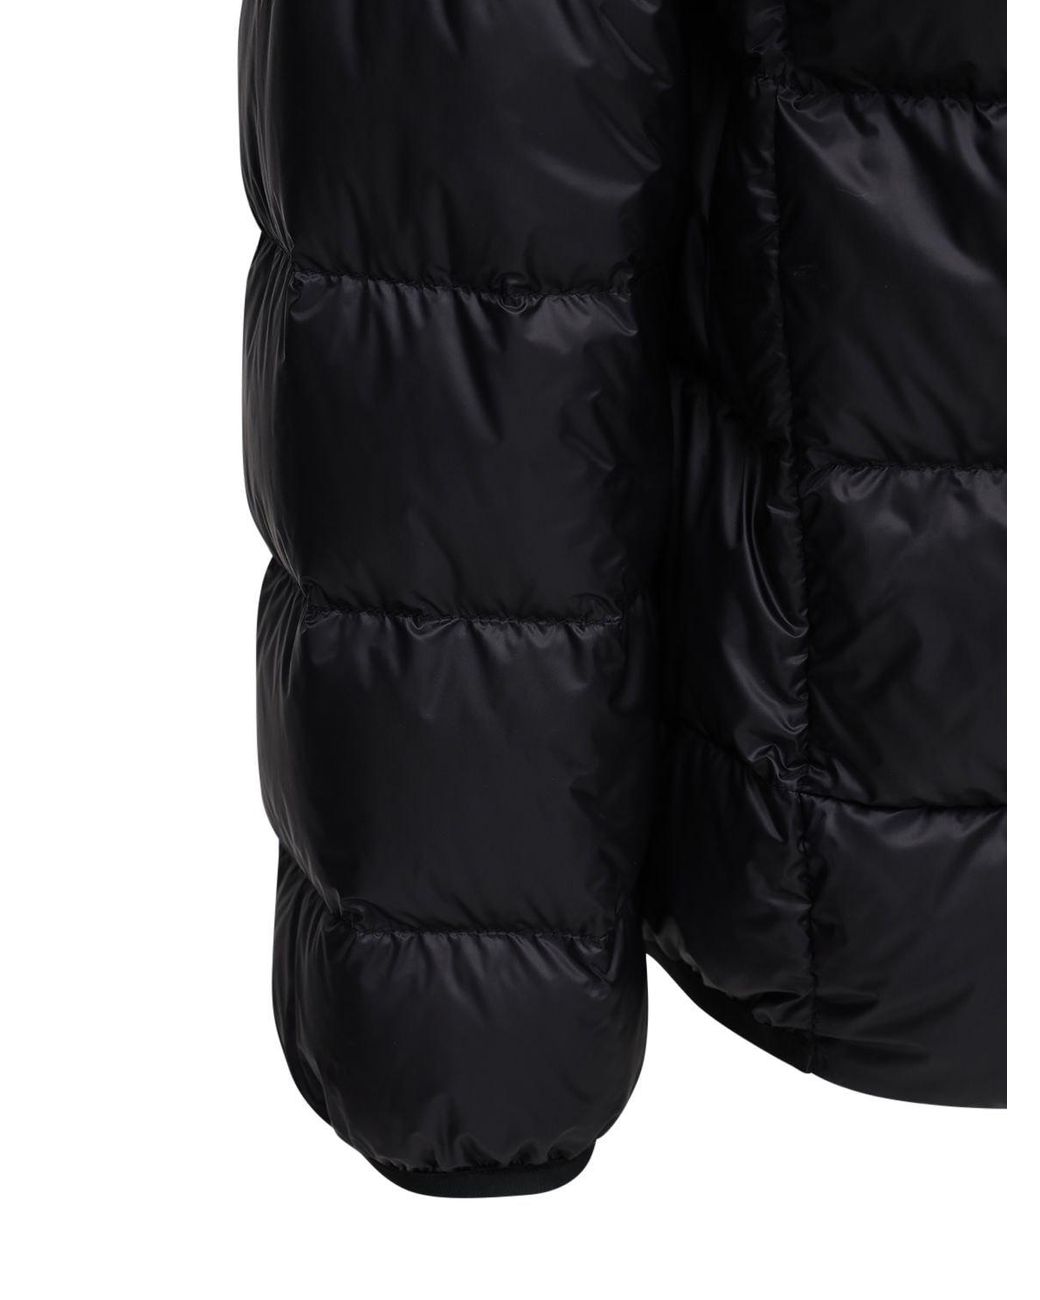 Moncler Peyre Jacket in Black for Men - Lyst